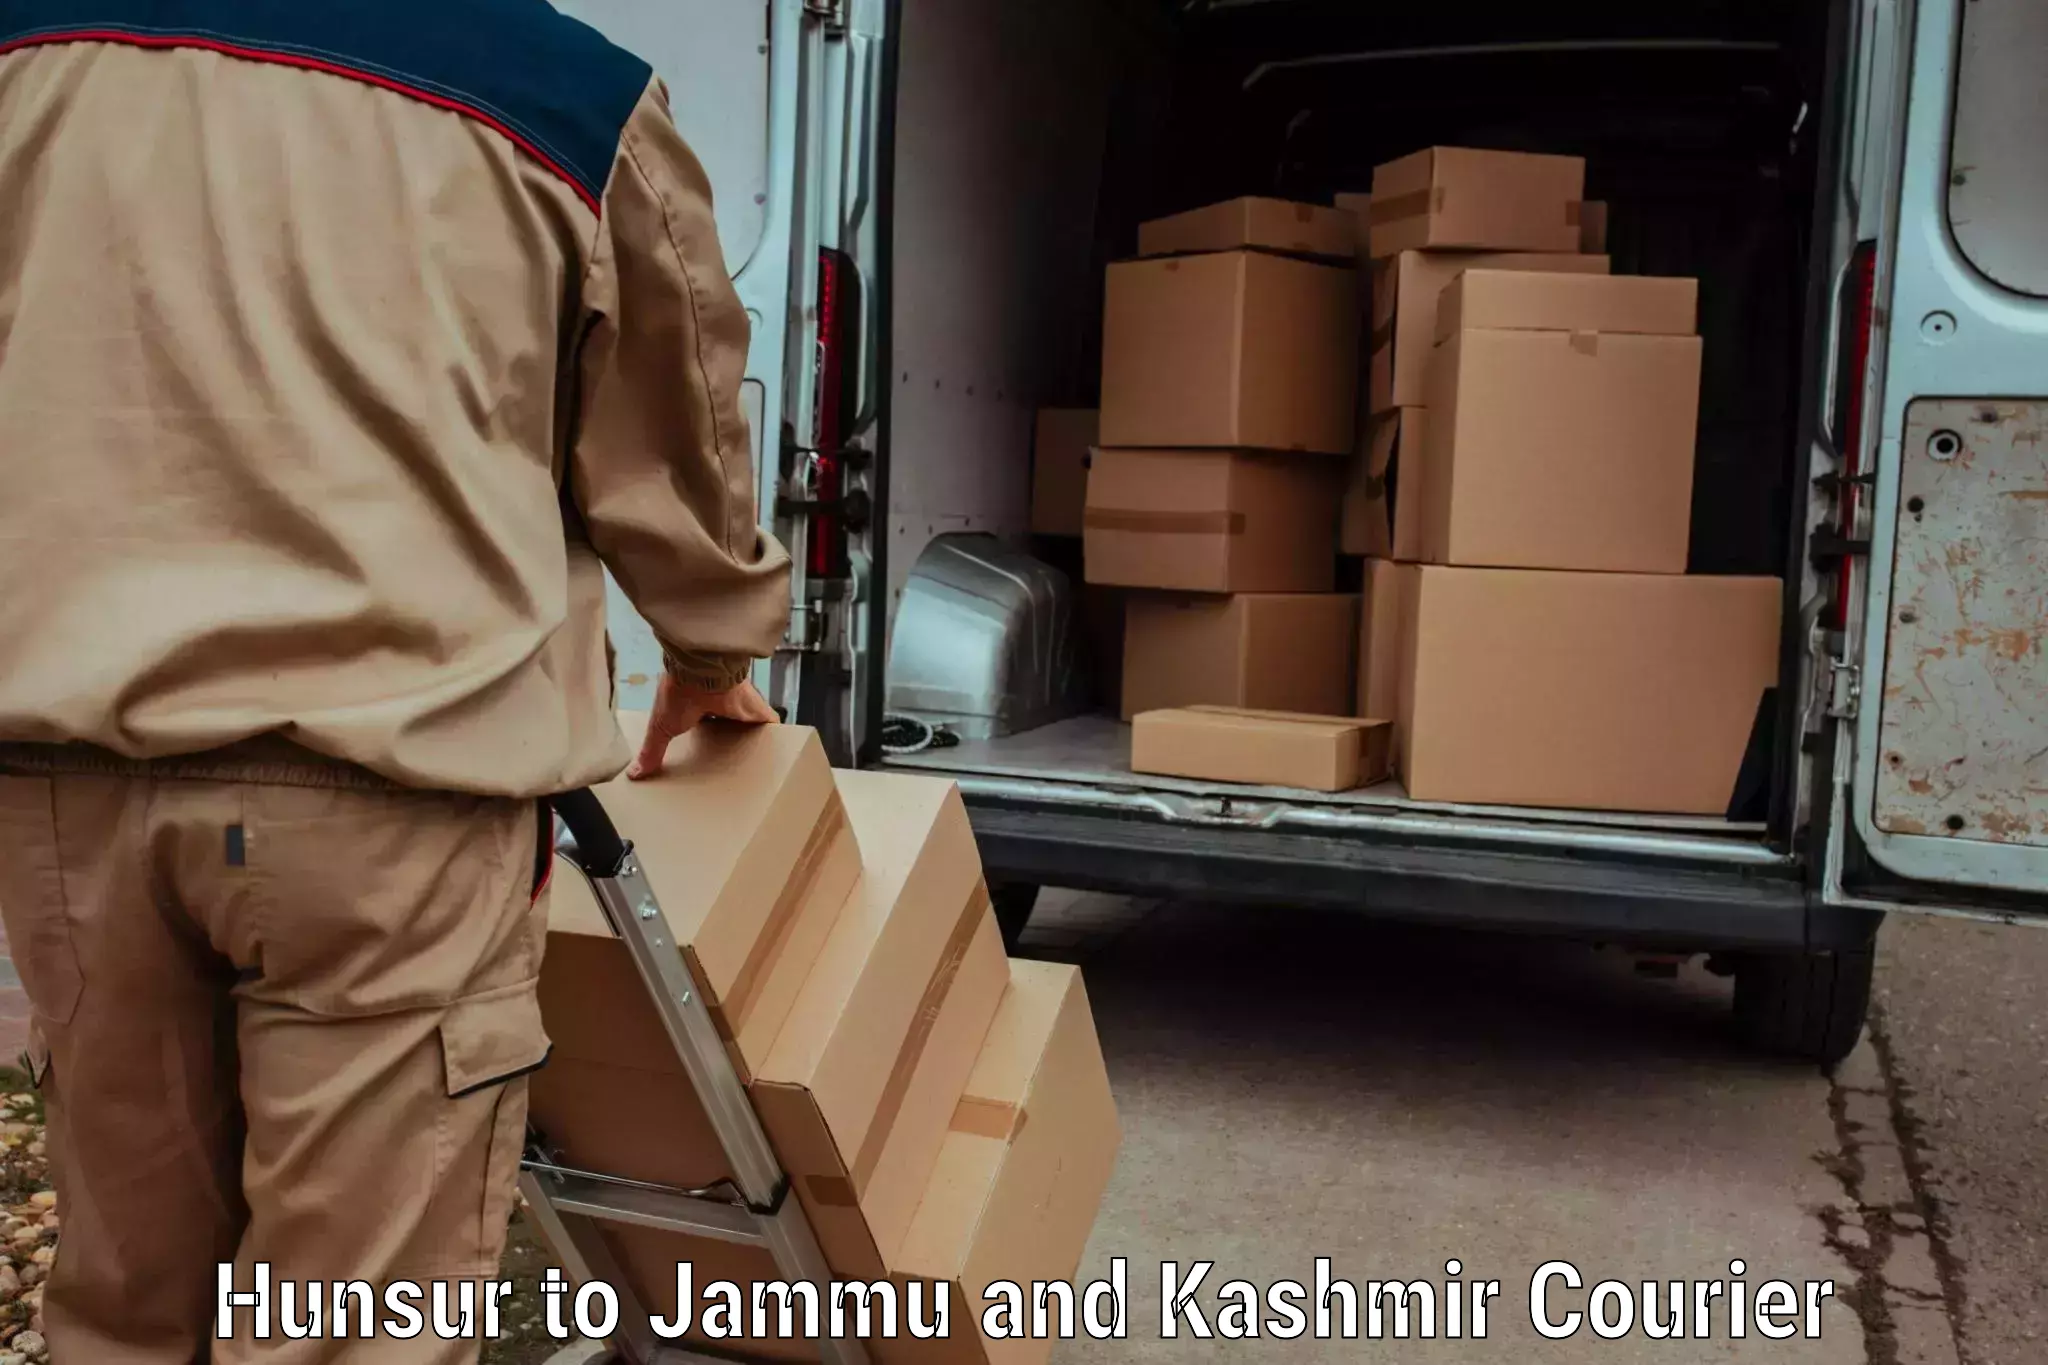 Professional courier handling Hunsur to Kargil